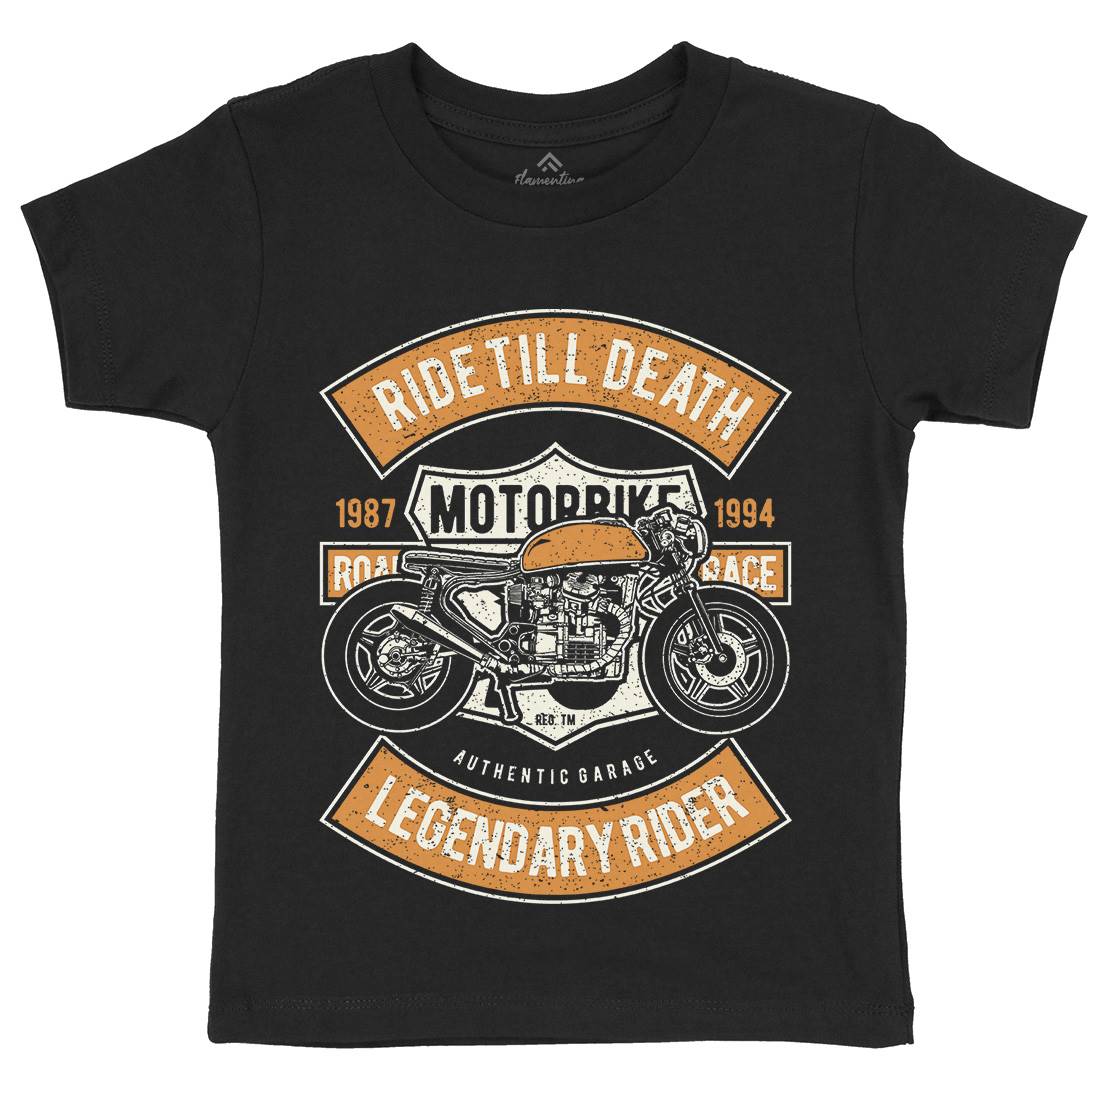 Ride Till Death Kids Crew Neck T-Shirt Motorcycles A743